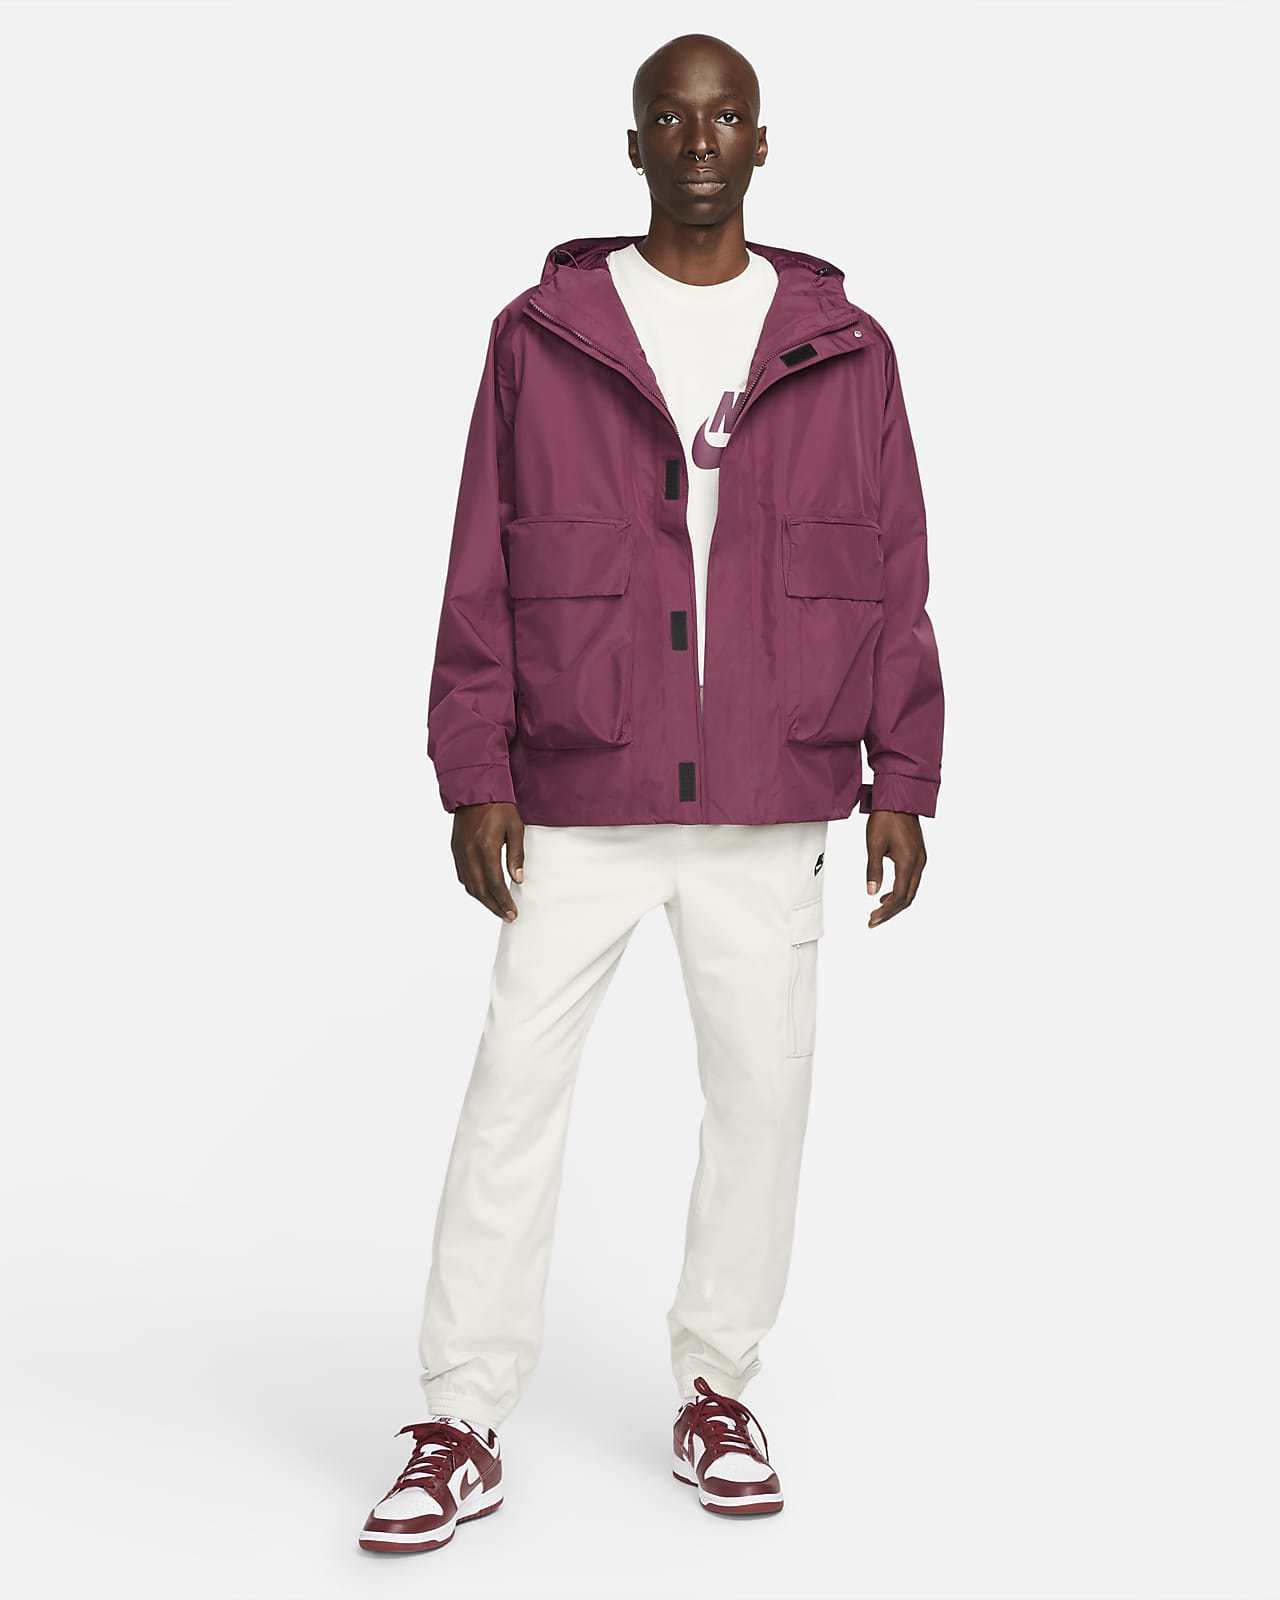 Nike Sportswear Storm-FIT ADV Tech Pack GORE-TEX Men's Hooded Jacket ...